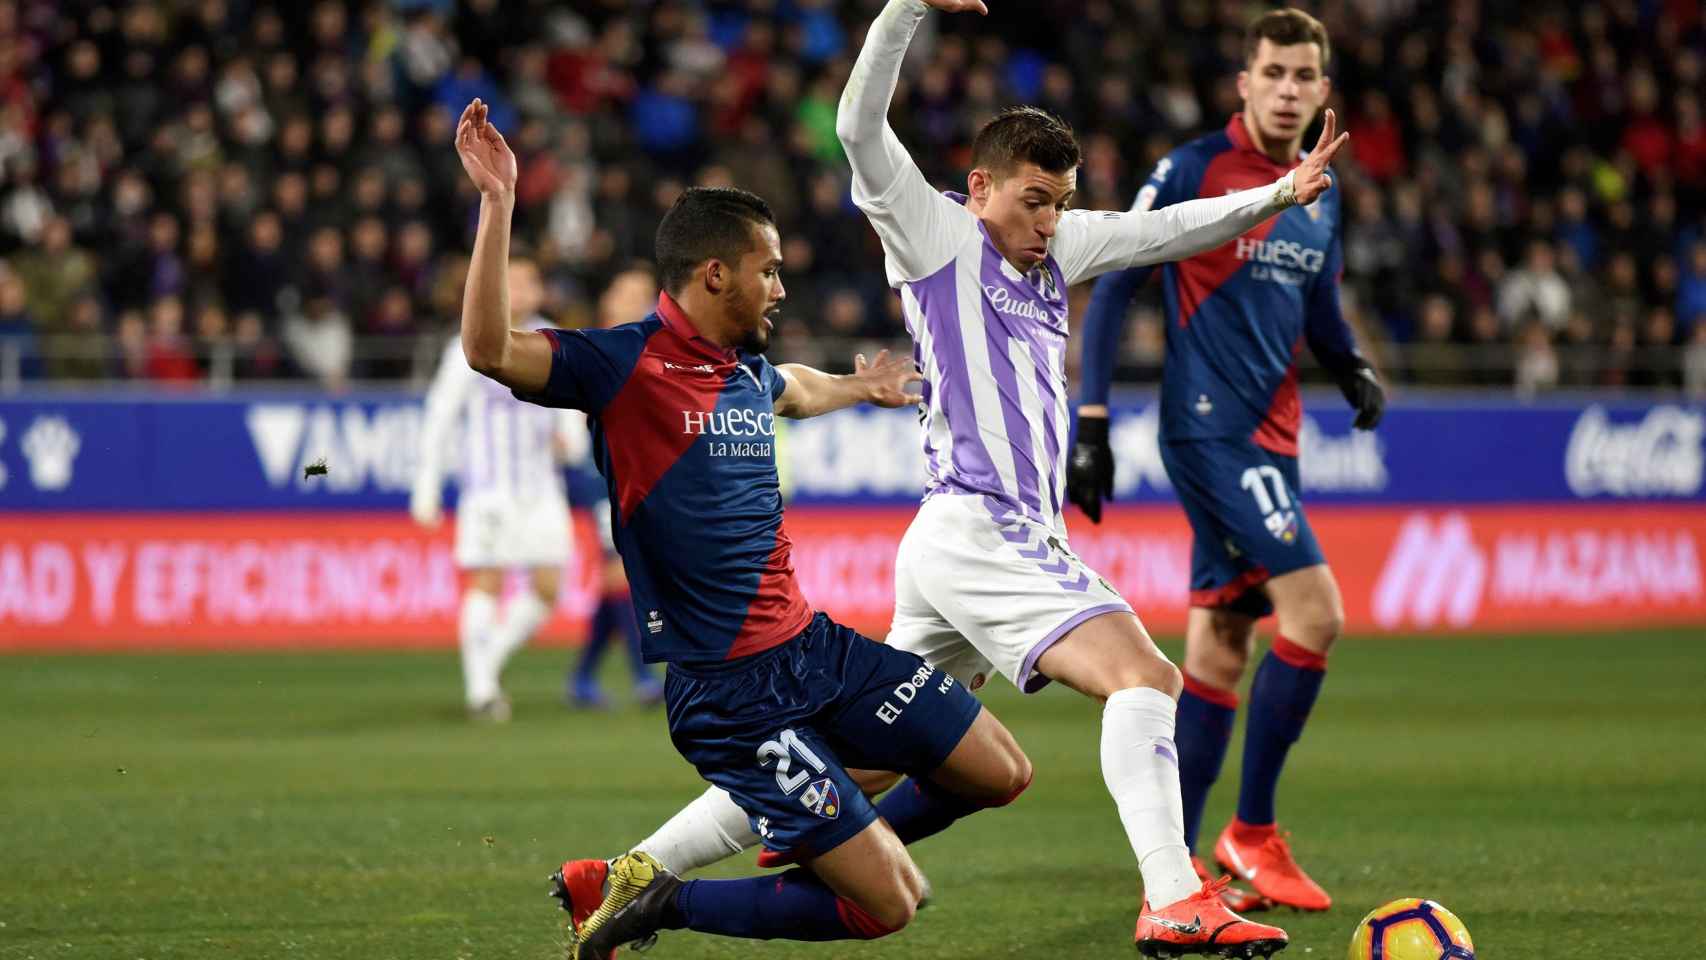 Alcaraz lucha el balón con Yangel Herrera en el Huesca - Valladolid de La Liga